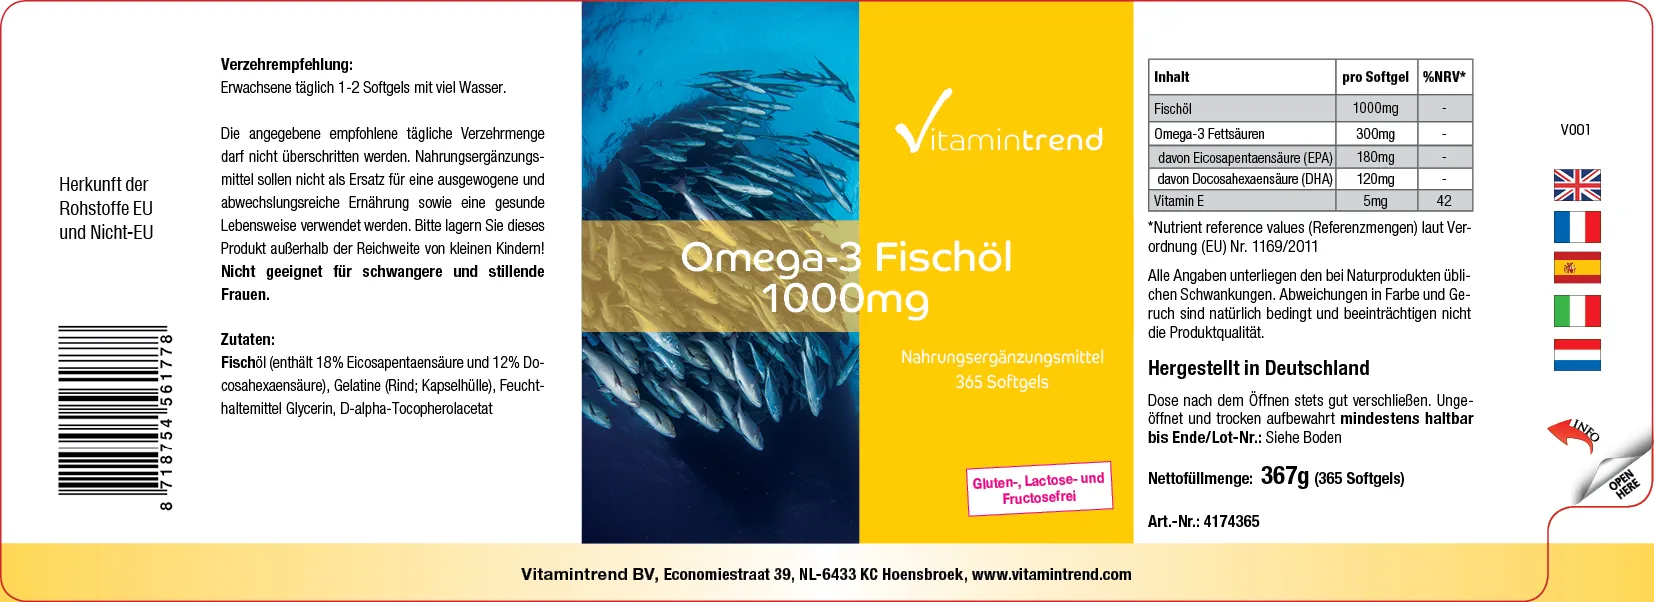 omega-3- fischoel-365-softgels-4174365-de